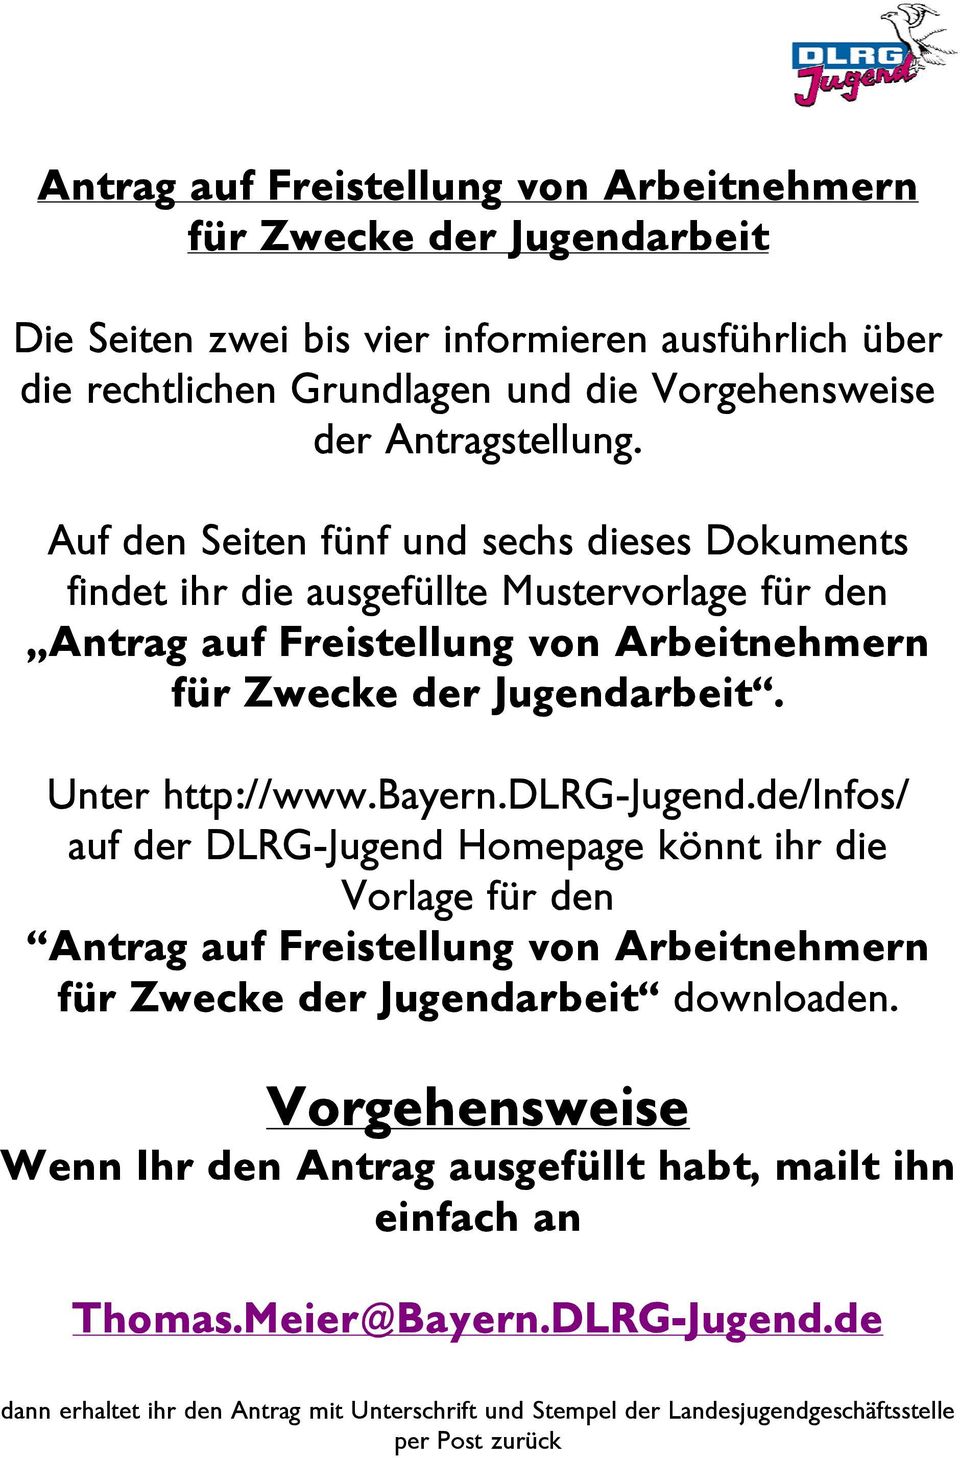 Unter http://www.bayern.dlrg-jugend.de/infos/ auf der DLRG-Jugend Homepage könnt ihr die Vorlage für den Antrag auf Freistellung von Arbeitnehmern für Zwecke der Jugendarbeit downloaden.